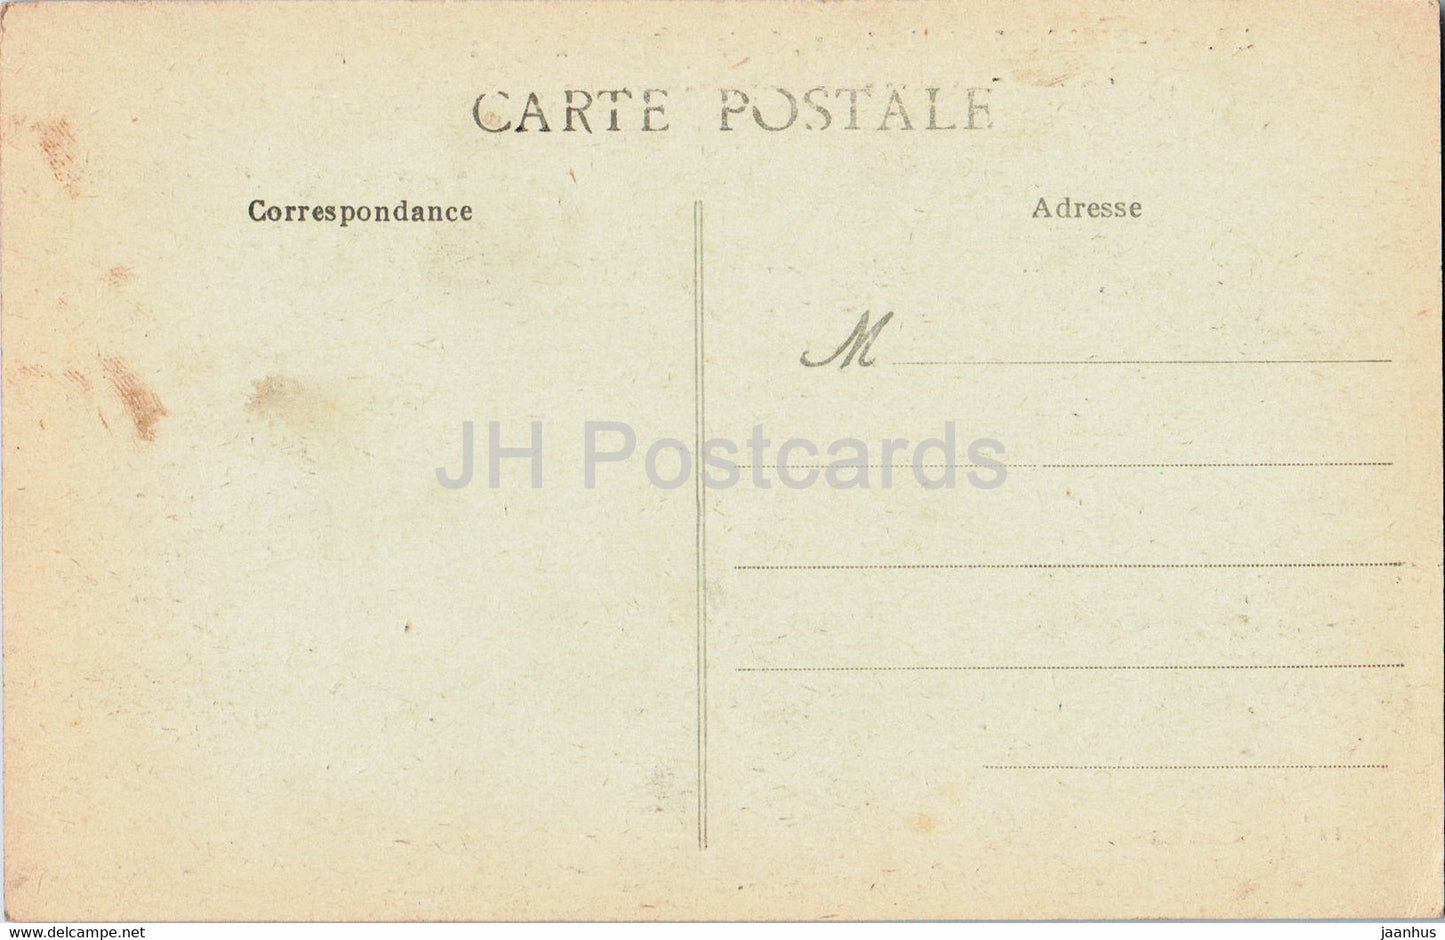 Mont Saint Michel - Abbaye - Bastion et Tour des Remparts - 88 - old postcard - France - unused